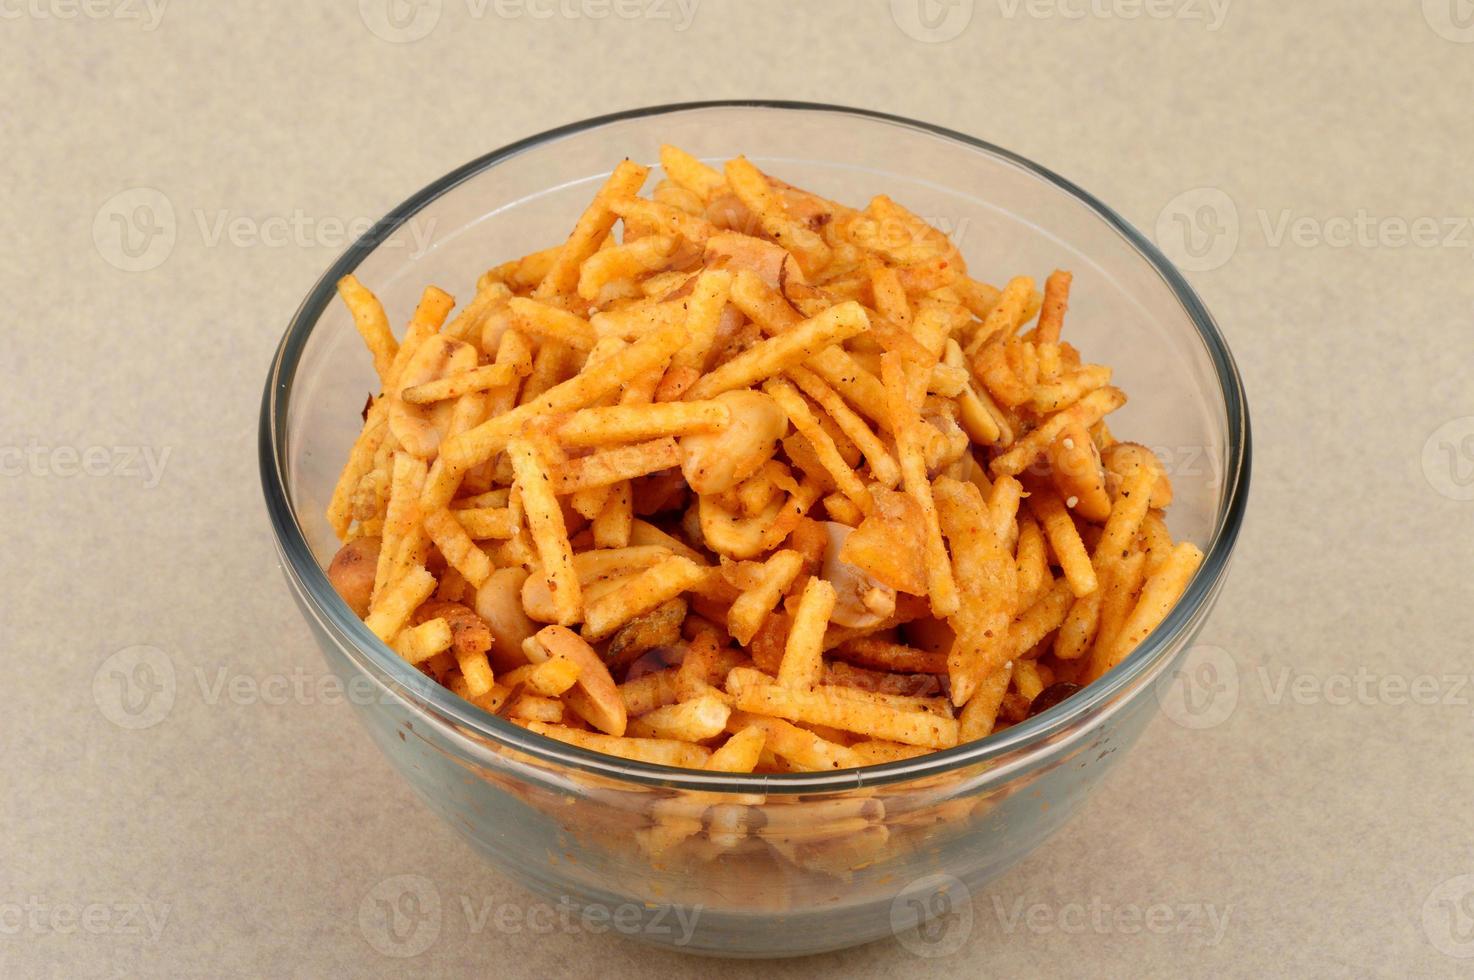 prato salgado frito - chivda ou mistura feita de grama de farinha e misturada com frutas secas. foto